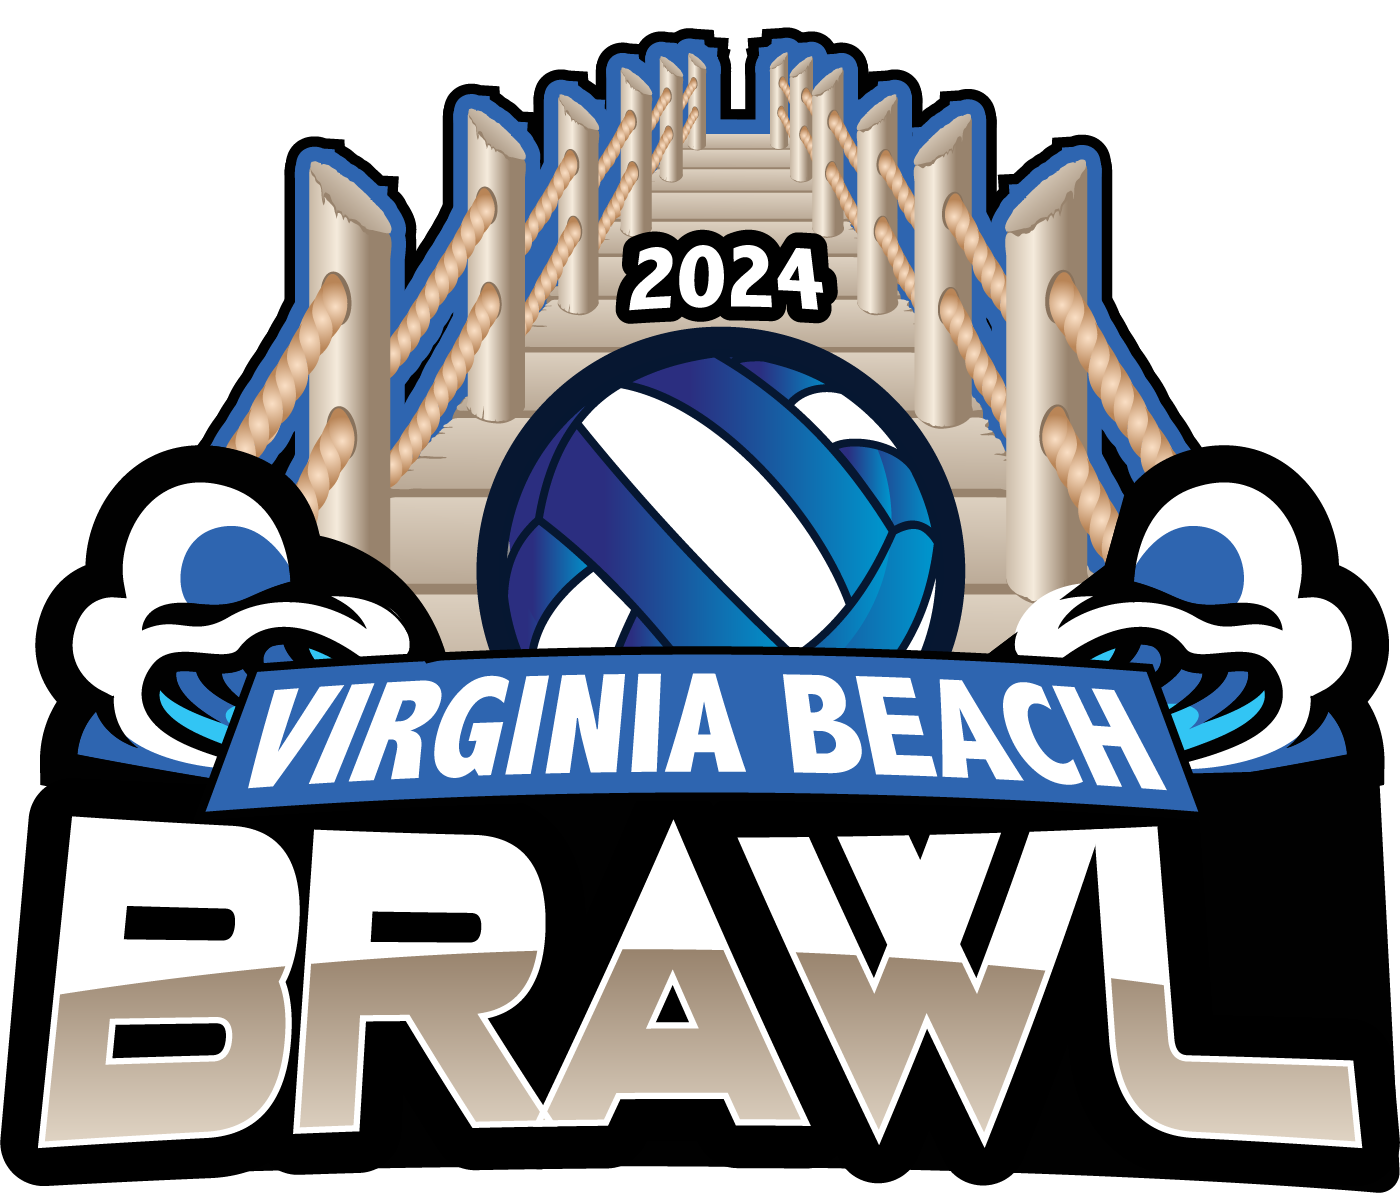 2024 Virginia Beach Brawl